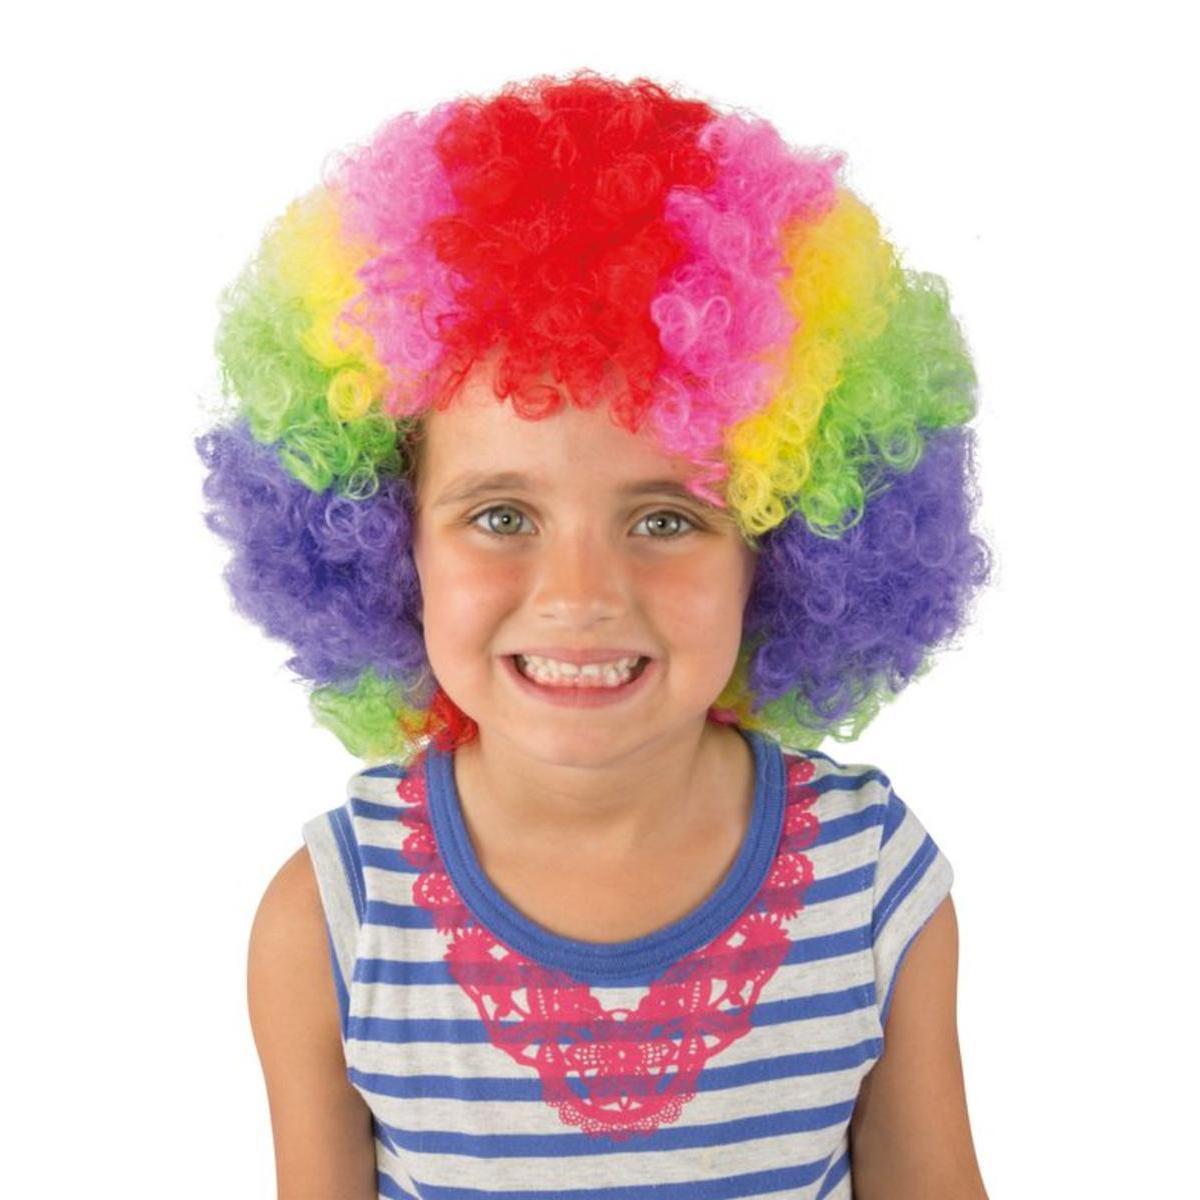 Perruque Clown Pop - Taille enfant - L 21 x H 4 x l 18.5 cm - Multicolore - PTIT CLOWN